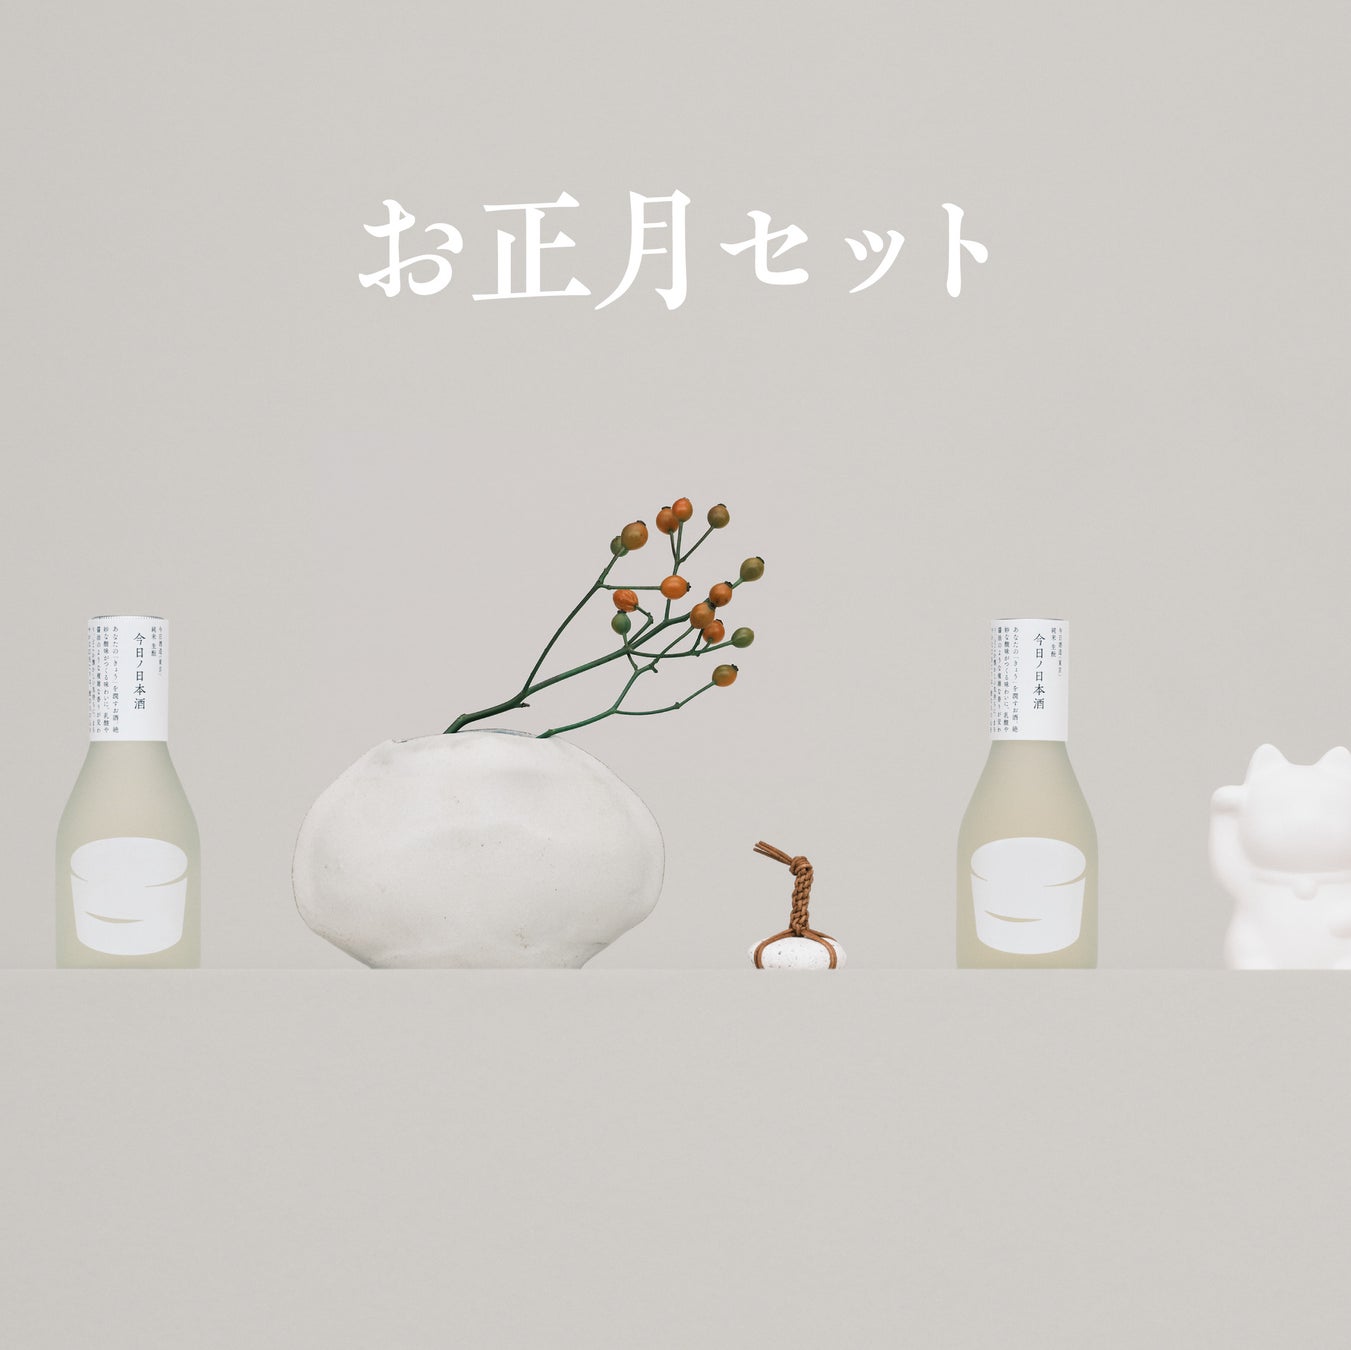 日本酒一合瓶ブランド「きょうの日本酒」、祝いの金箔付きお正月セットを12/27(水)まで期間限定販売